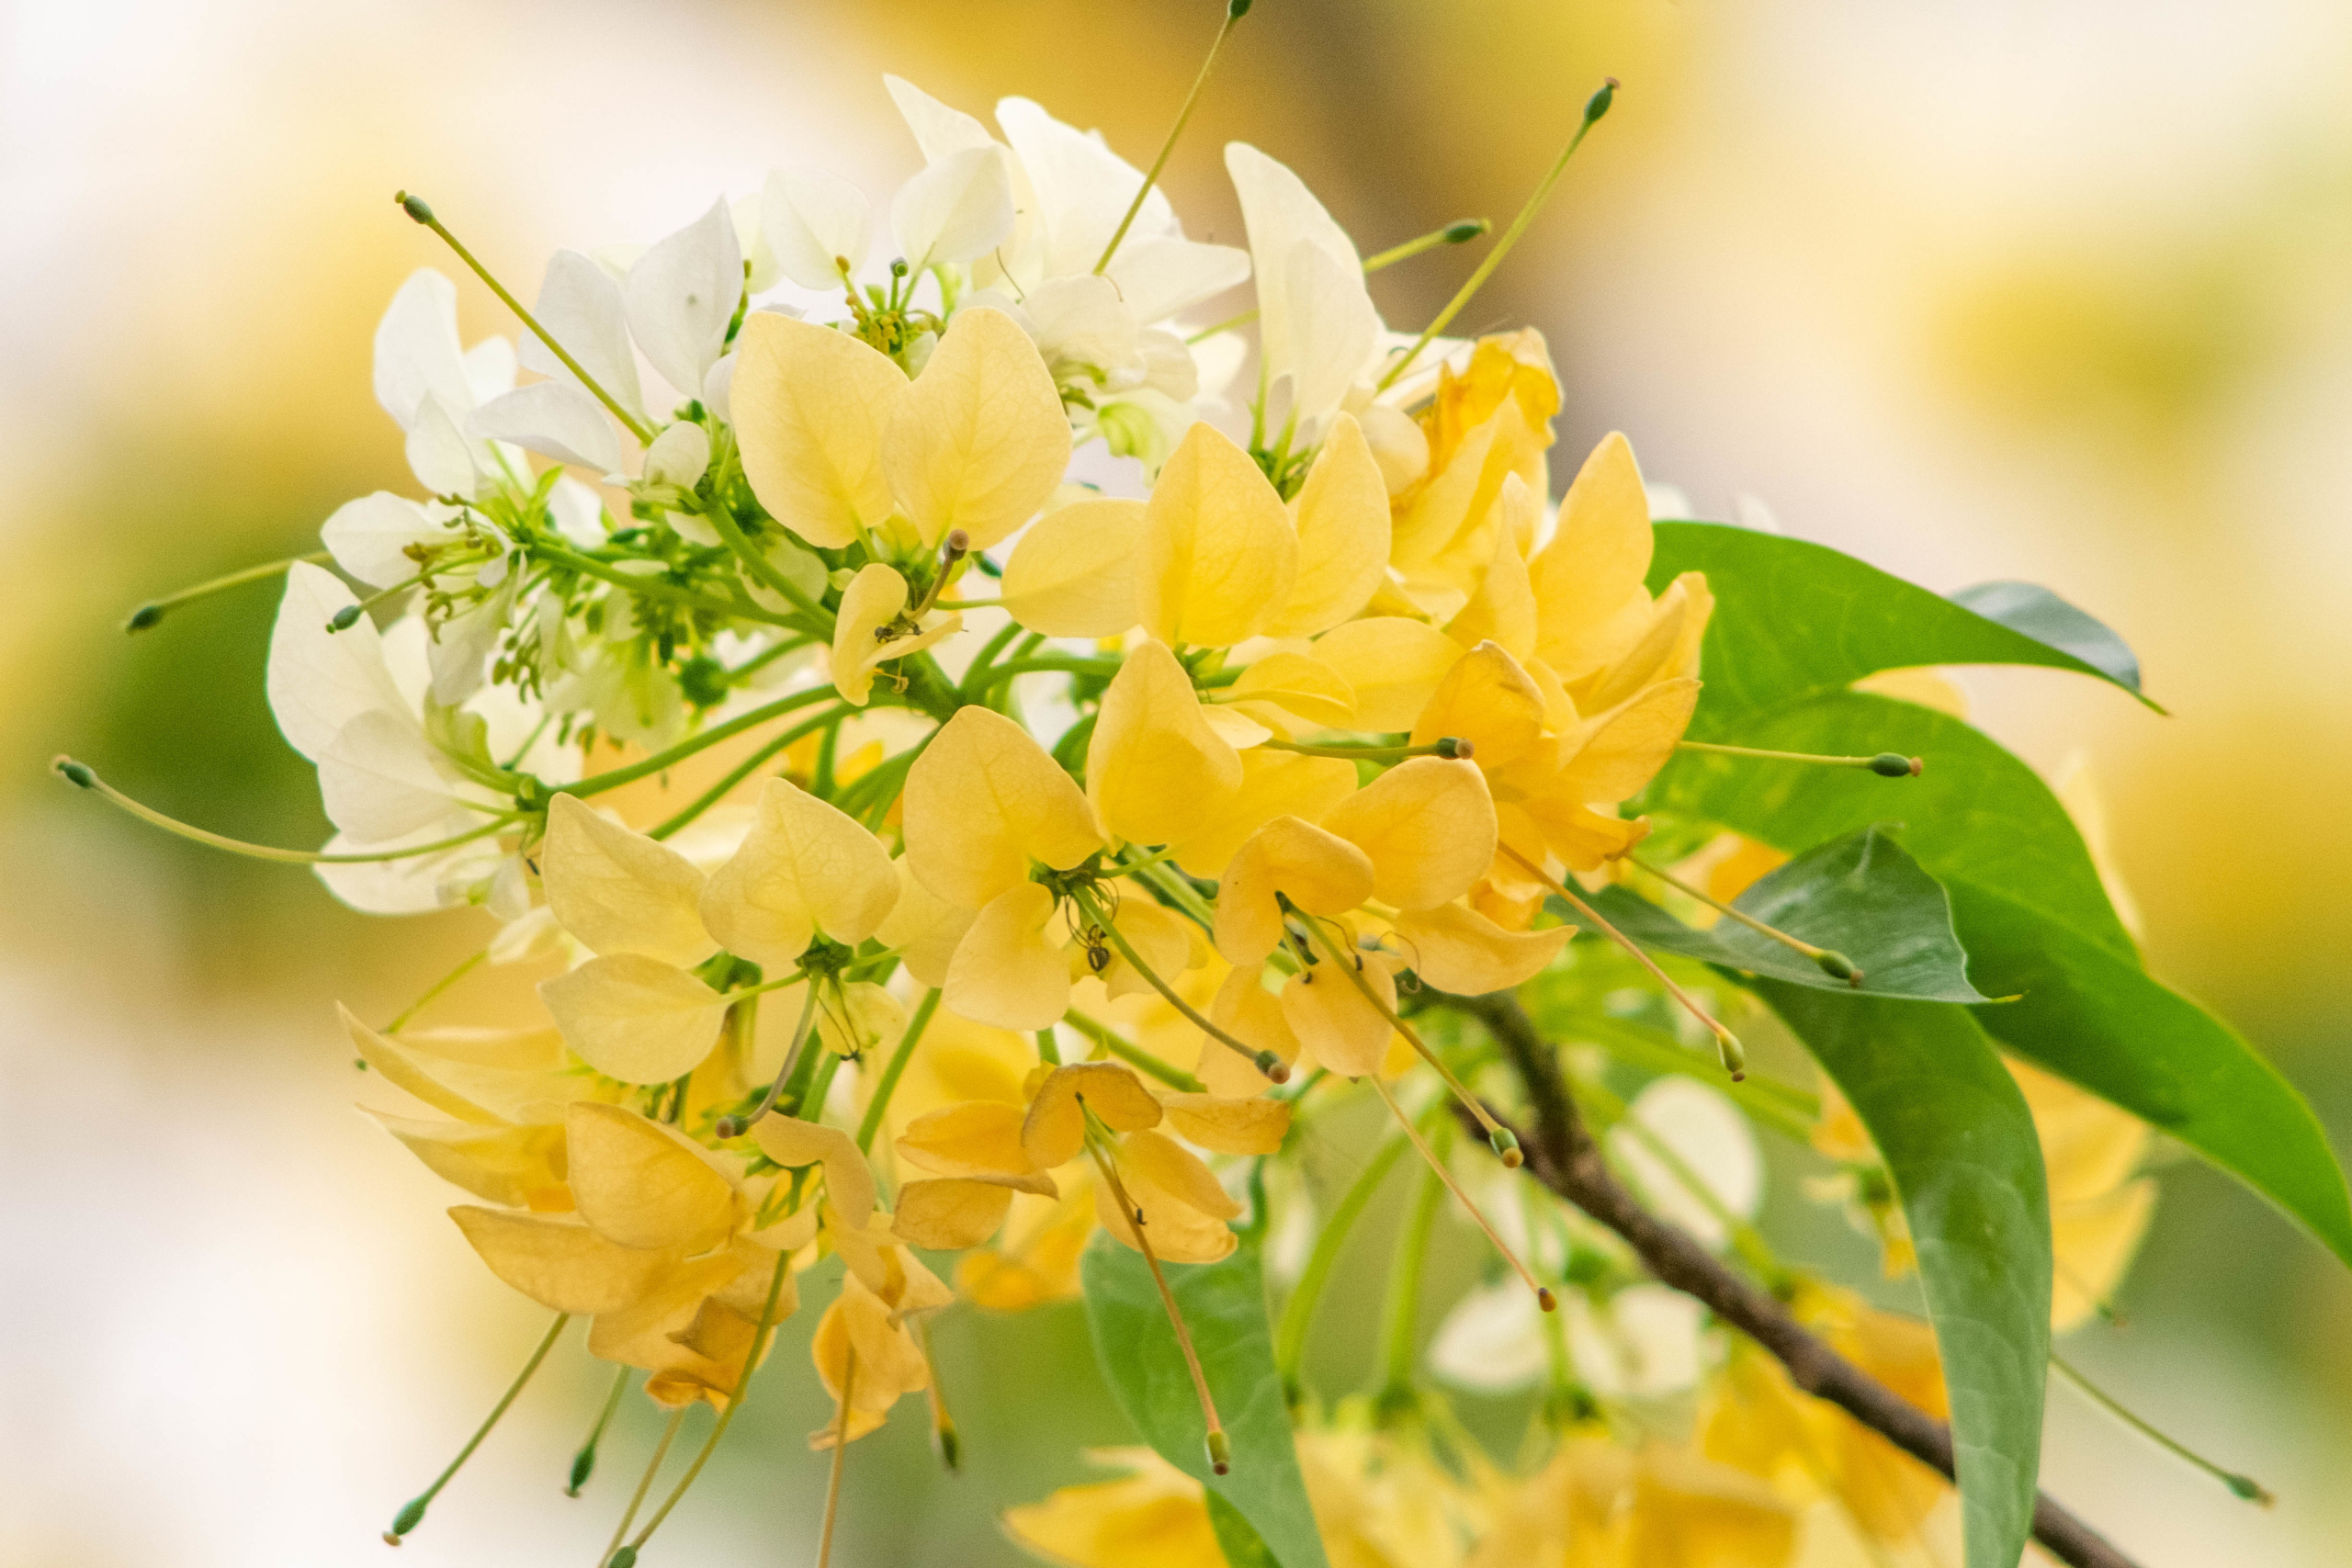 Cây hoa Bún 300 năm tuổi đẹp nao lòng người Hà Thành